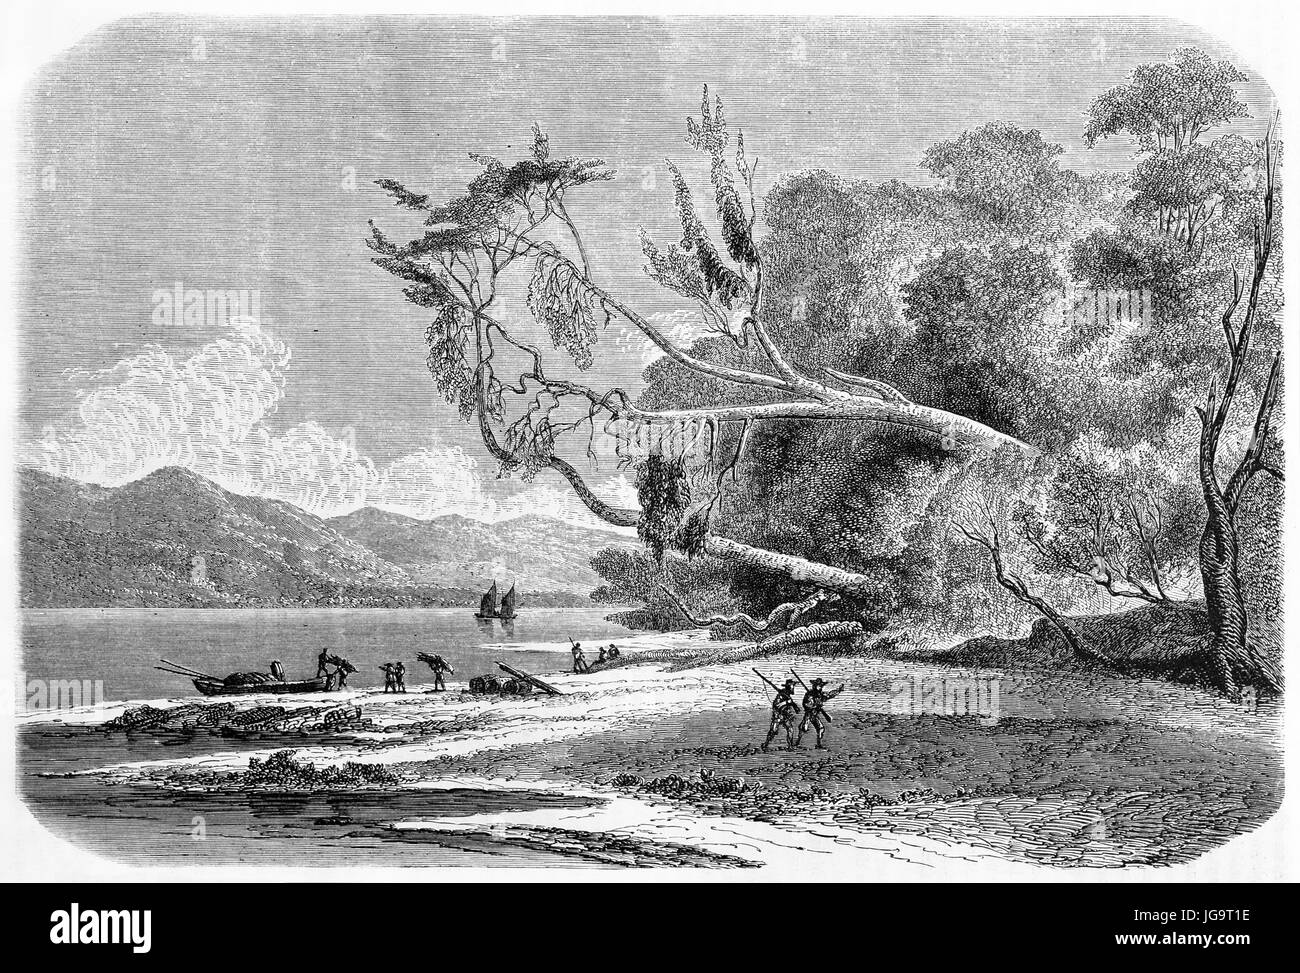 Tronc horizontal émergent de la végétation faisant face au paysage de la plage de la baie Saint-Nicolas, Chili. Art de style gravure de tons gris anciens par de Bérard 1861 Banque D'Images